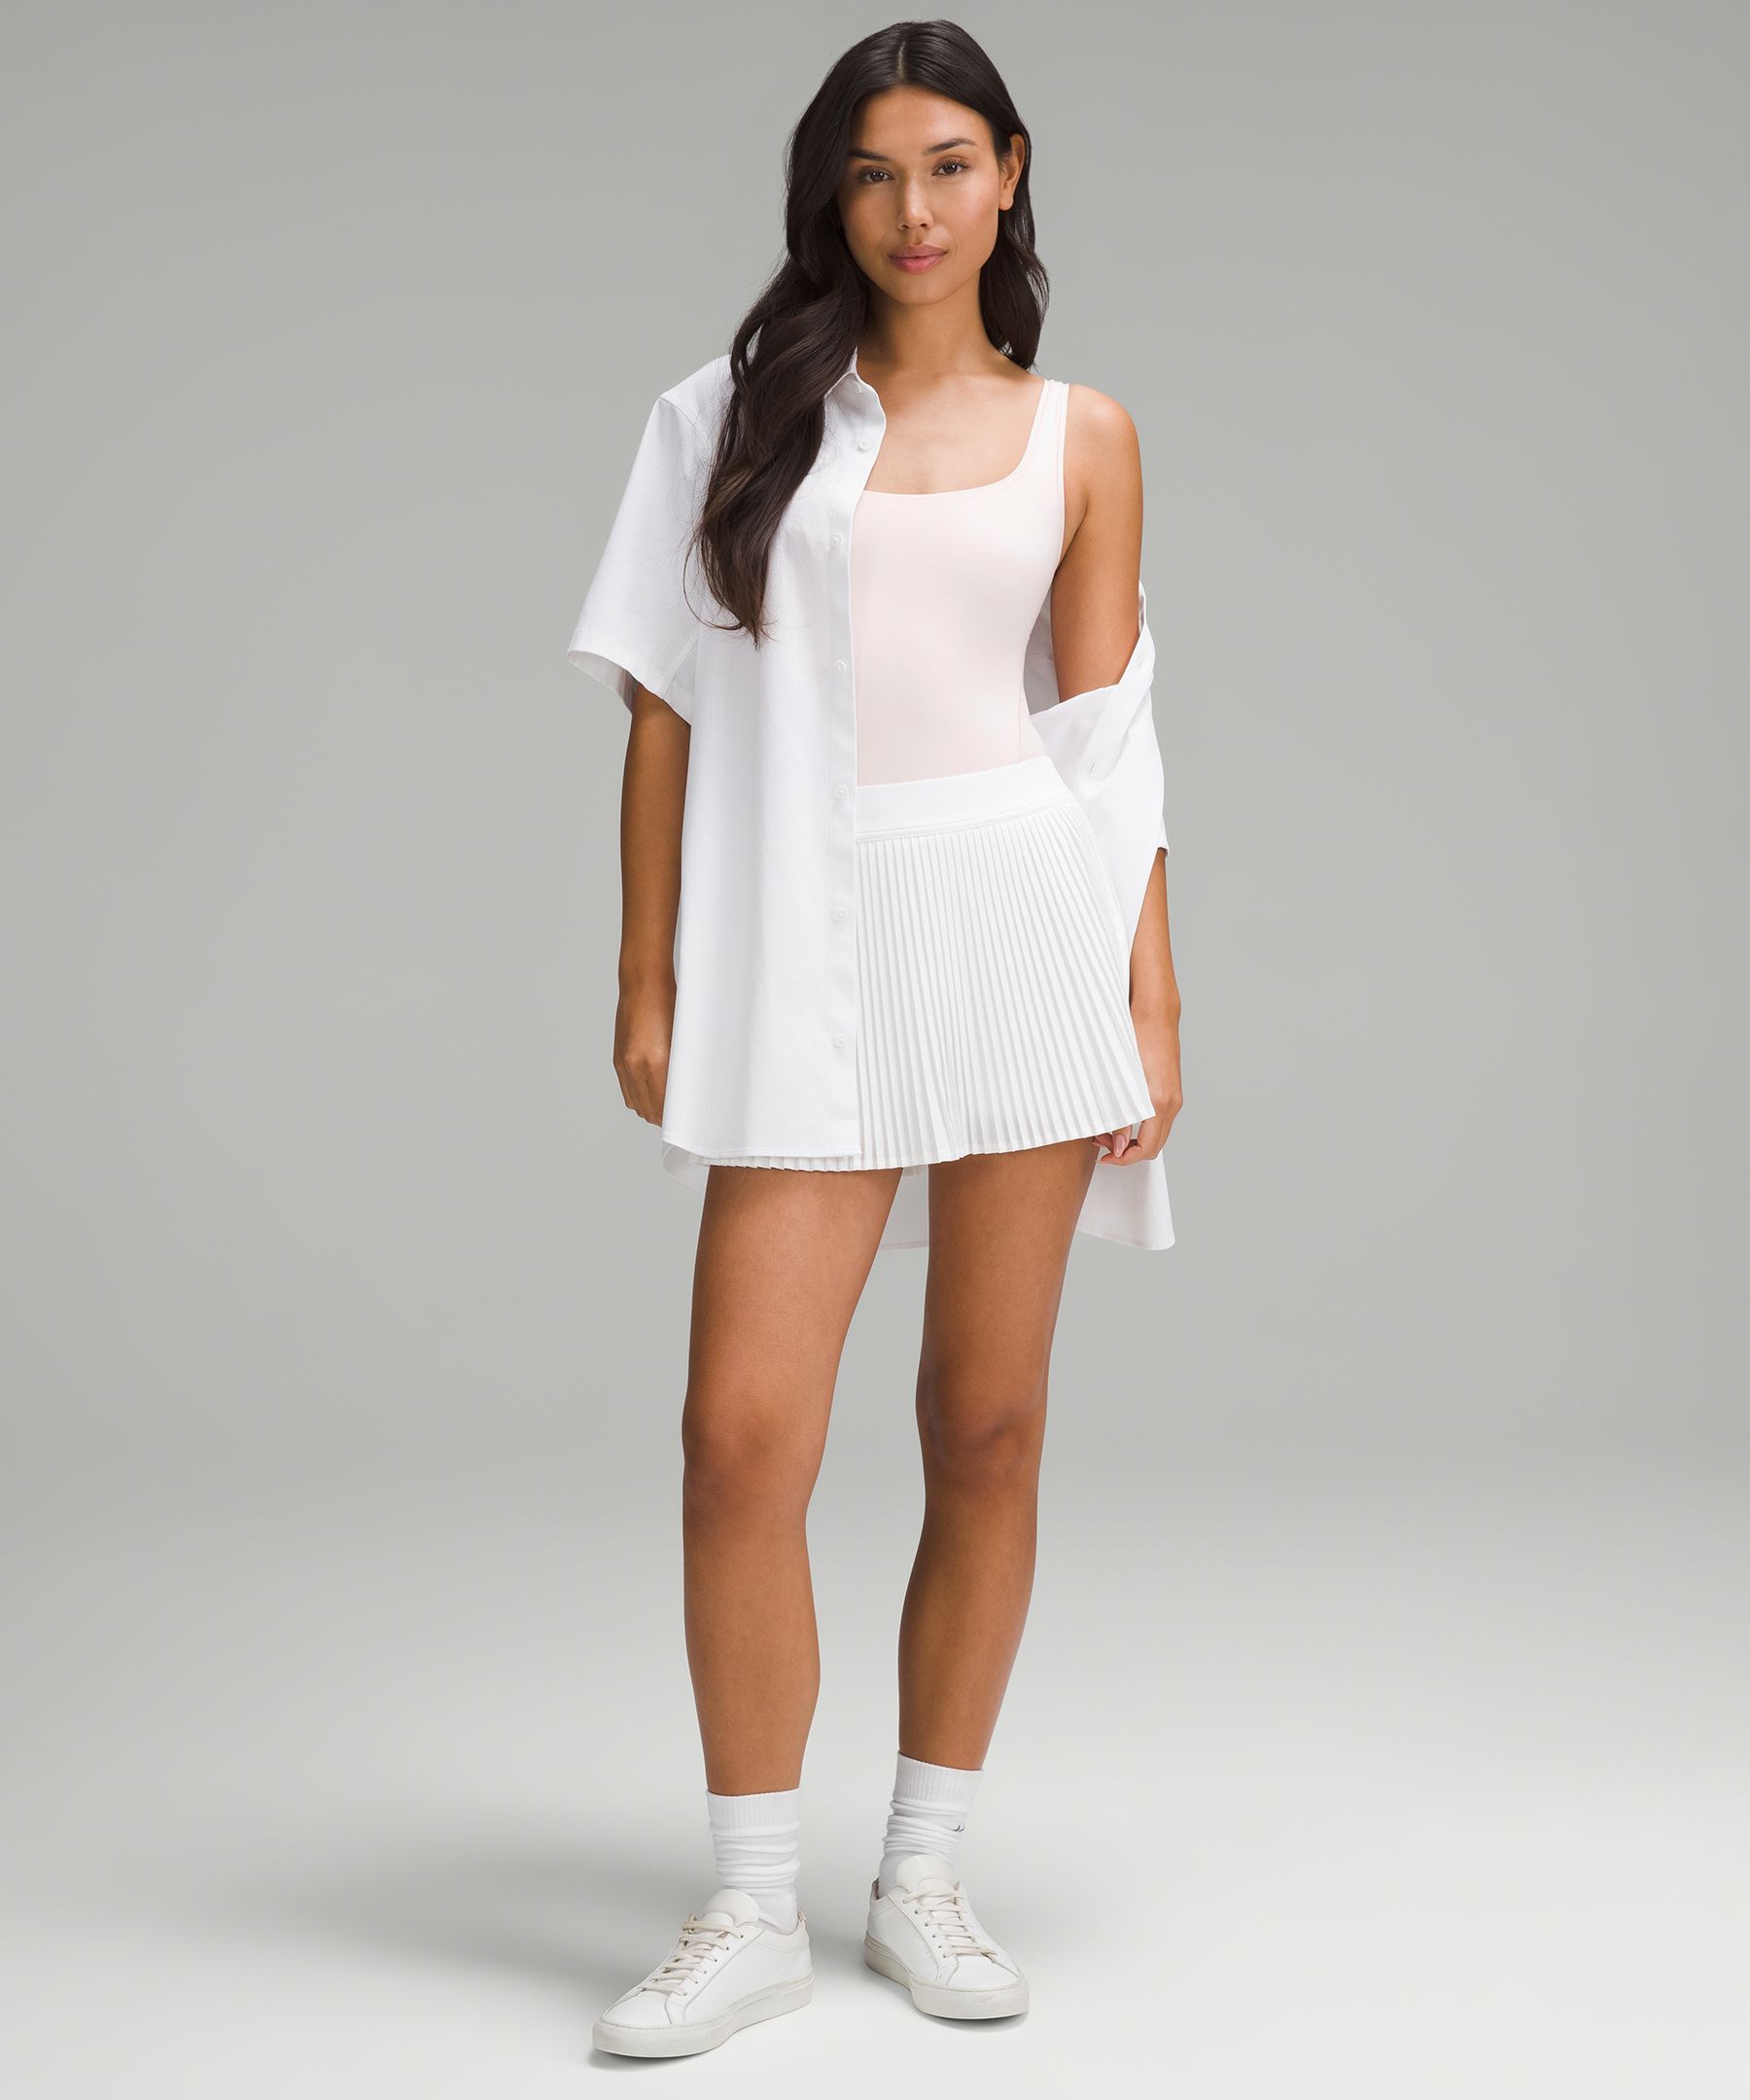 Scoop Neck Double Layer Sleeveless Bodysuit in Soft Cream